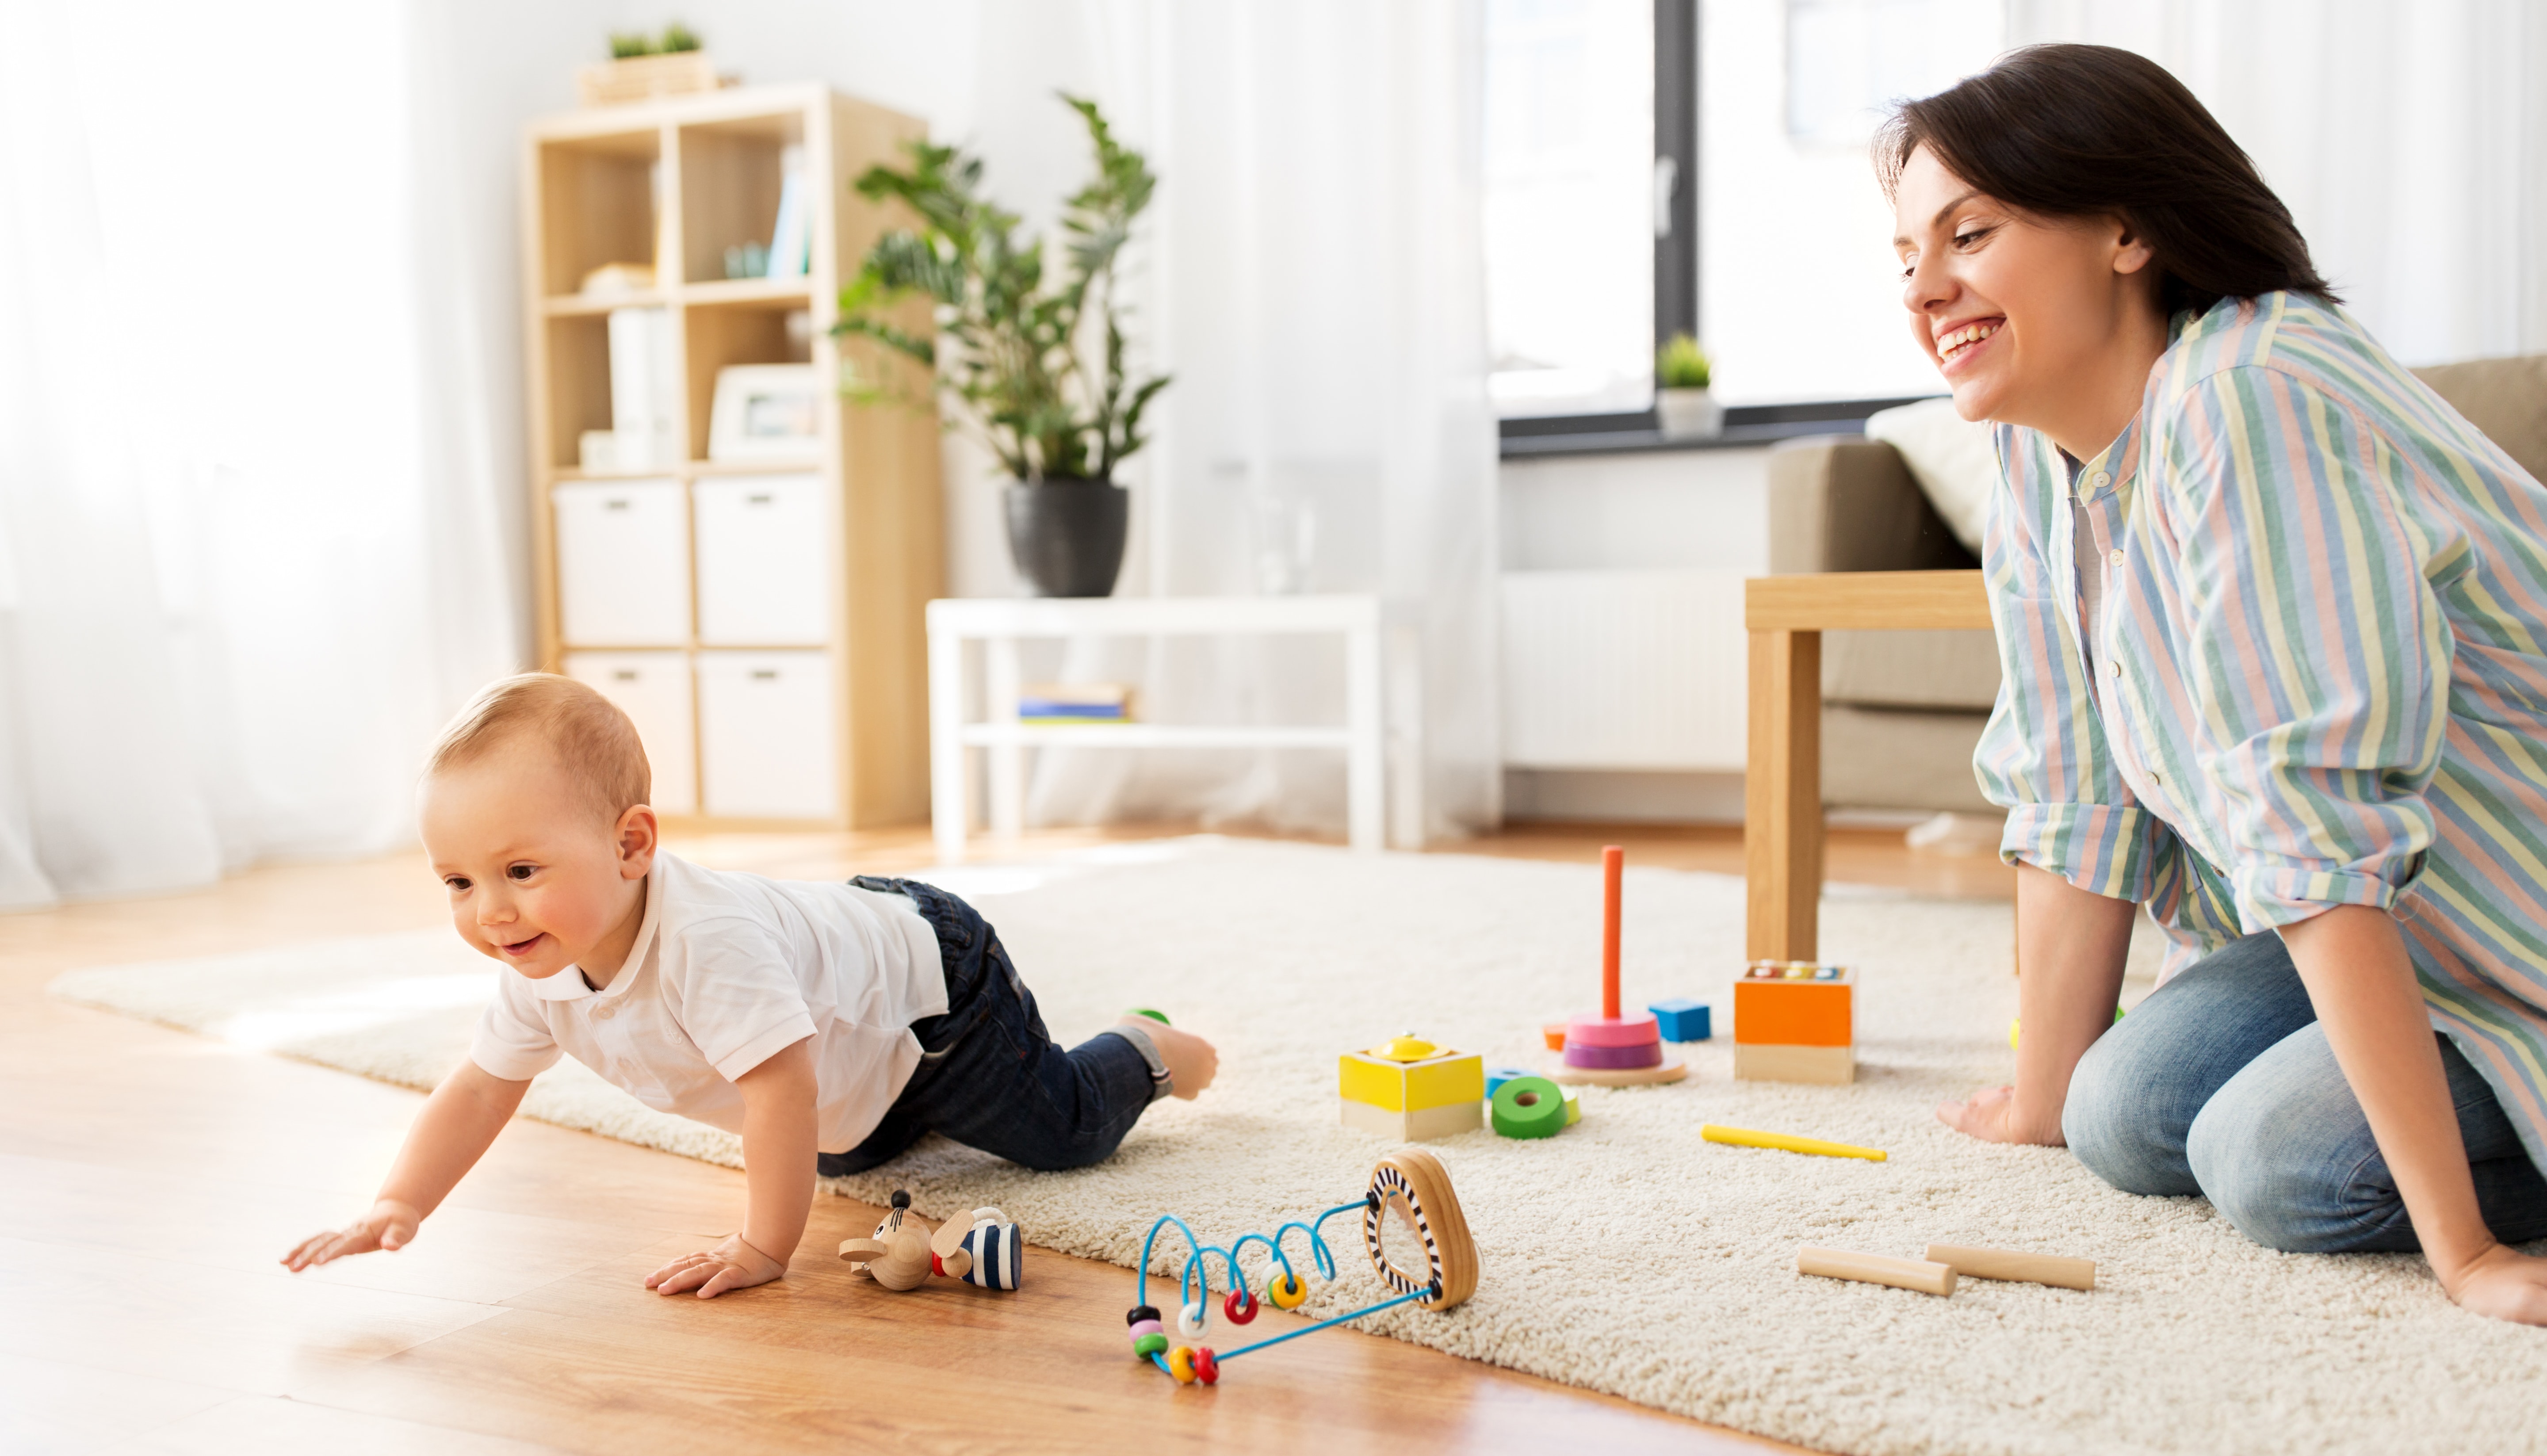 Kindersicherheit - Die Wohnung kindersicher gestalten - Väterzeit